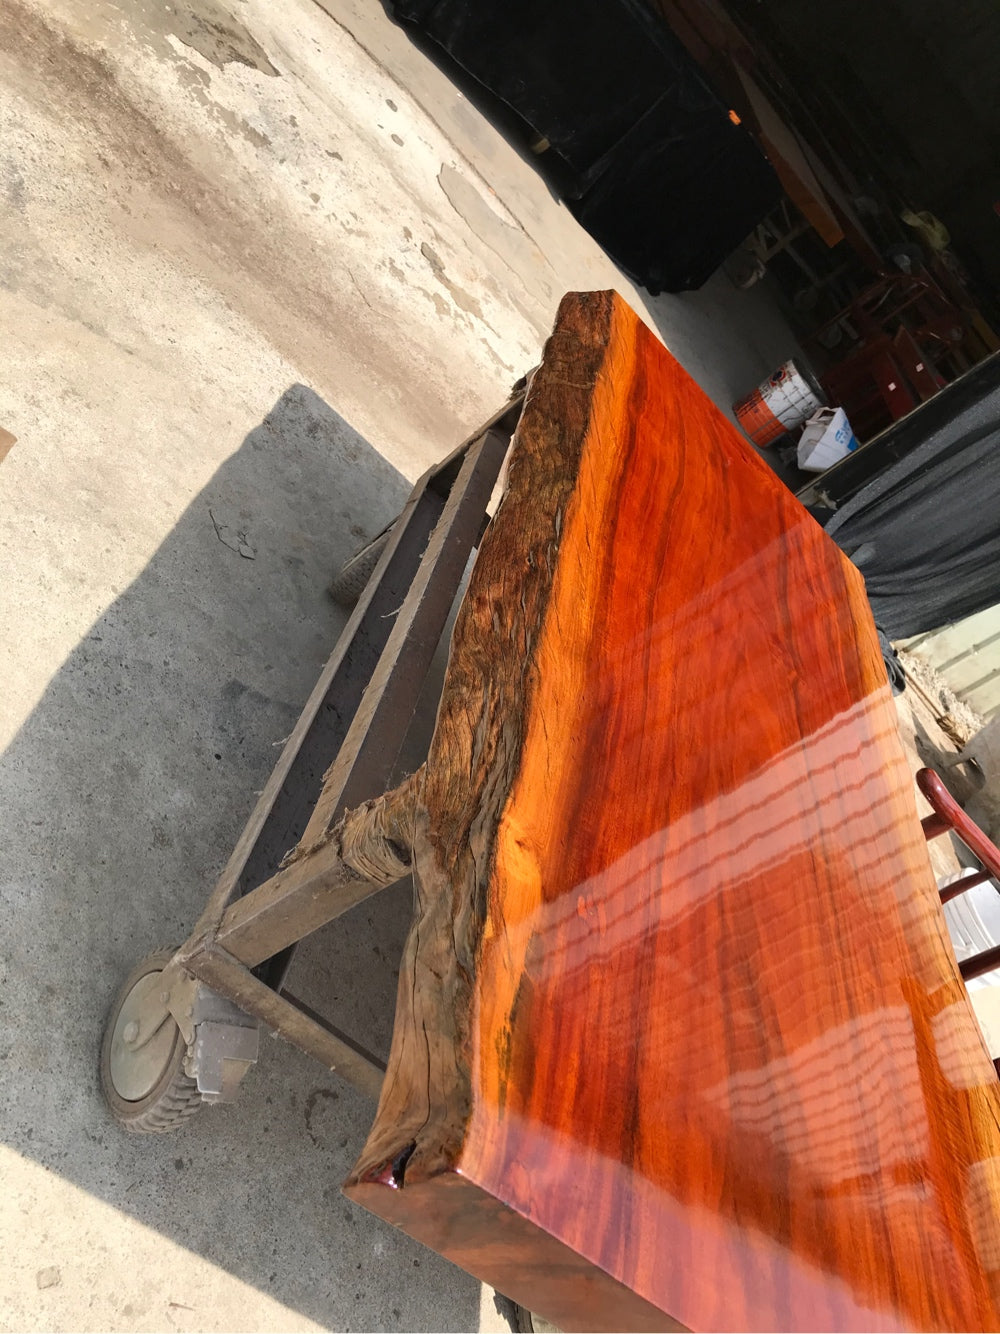 Losas de madera para tableros de mesa Reino Unido, mesa de comedor de losa <tc>Rhodesian Copal wood</tc>, tablero de mesa de losa de madera.